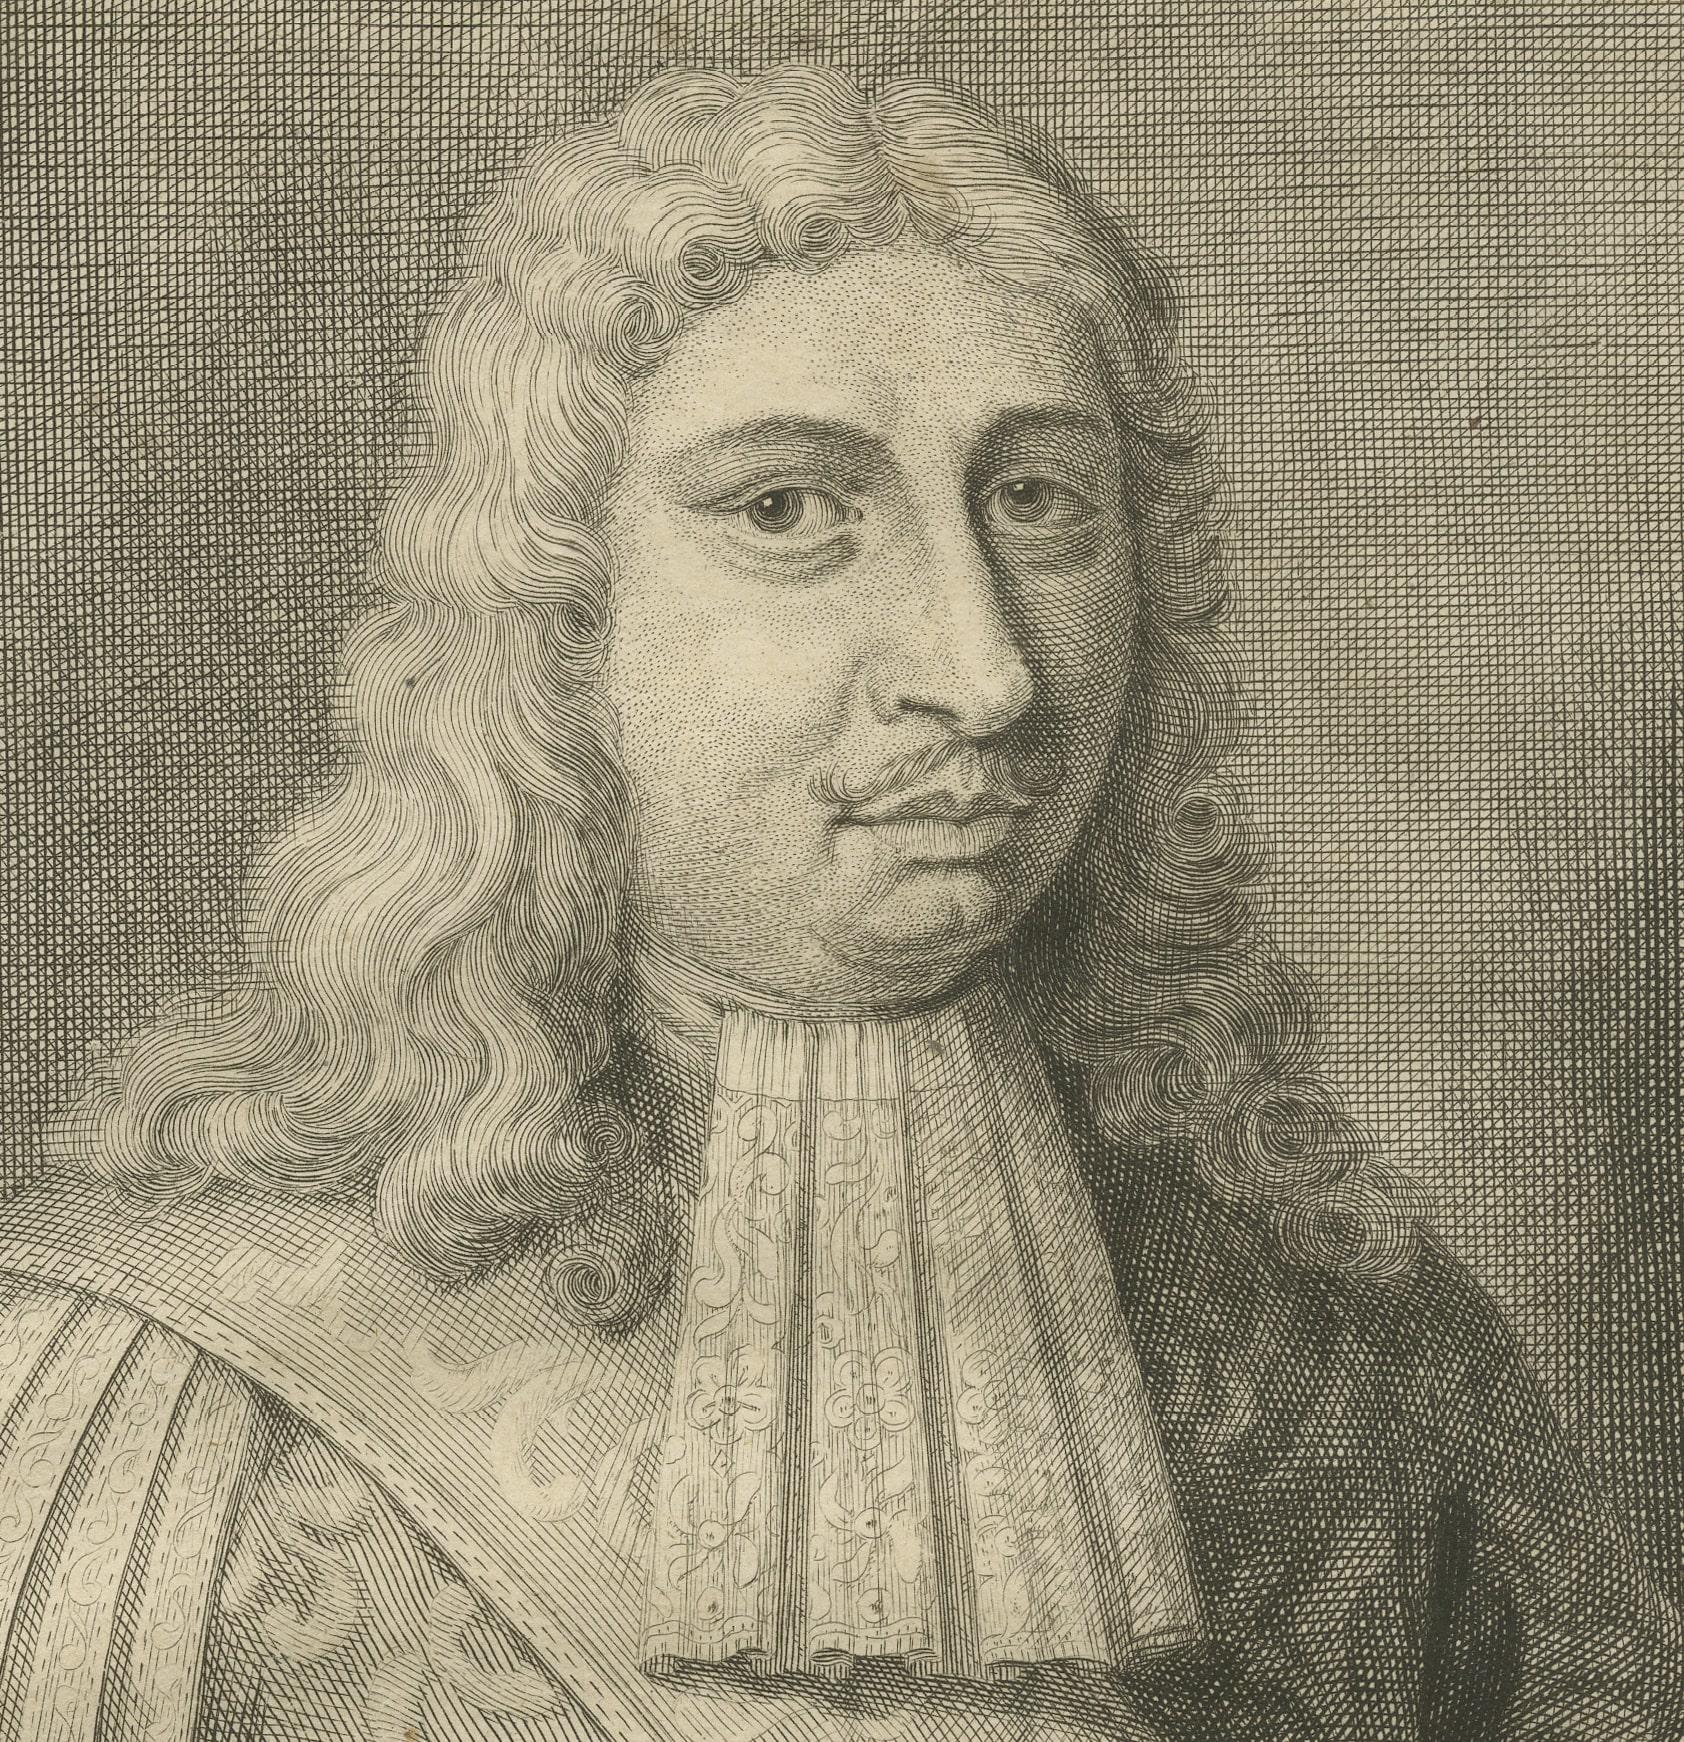 Cornelis Speelman war eine bedeutende Persönlichkeit in der Niederländischen Ostindien-Kompanie (VOC) und war von 1681 bis 1684 Generalgouverneur von Niederländisch-Ostindien. Hier finden Sie einen Überblick über sein Leben:

1. **Frühes Leben**: